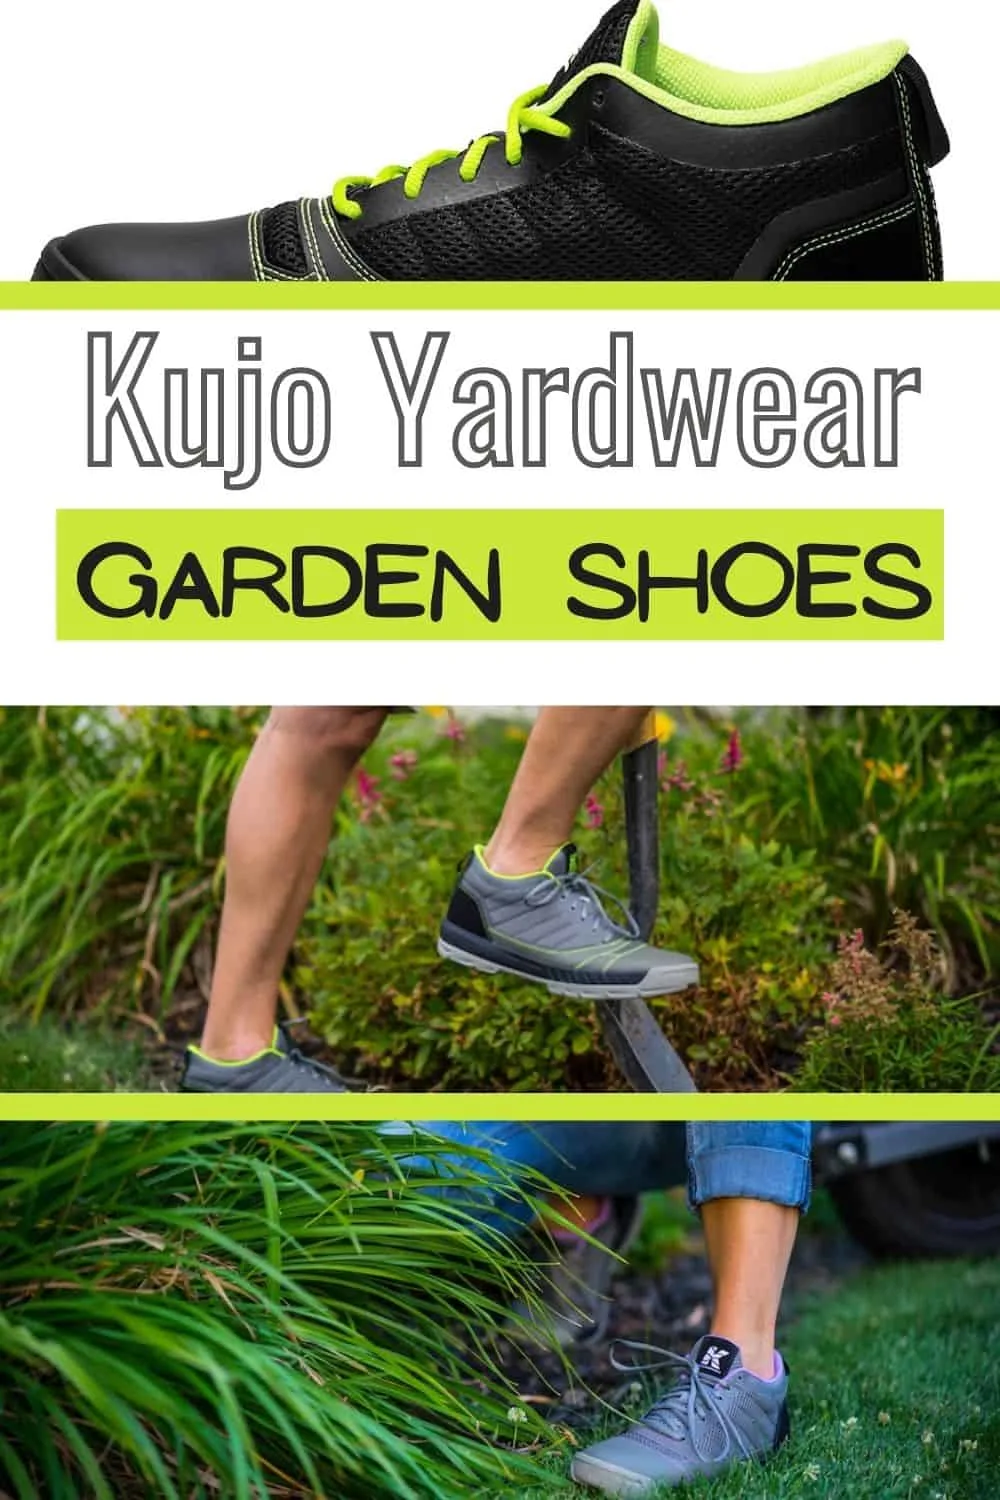 Kujo Yardwear Garden Shoes